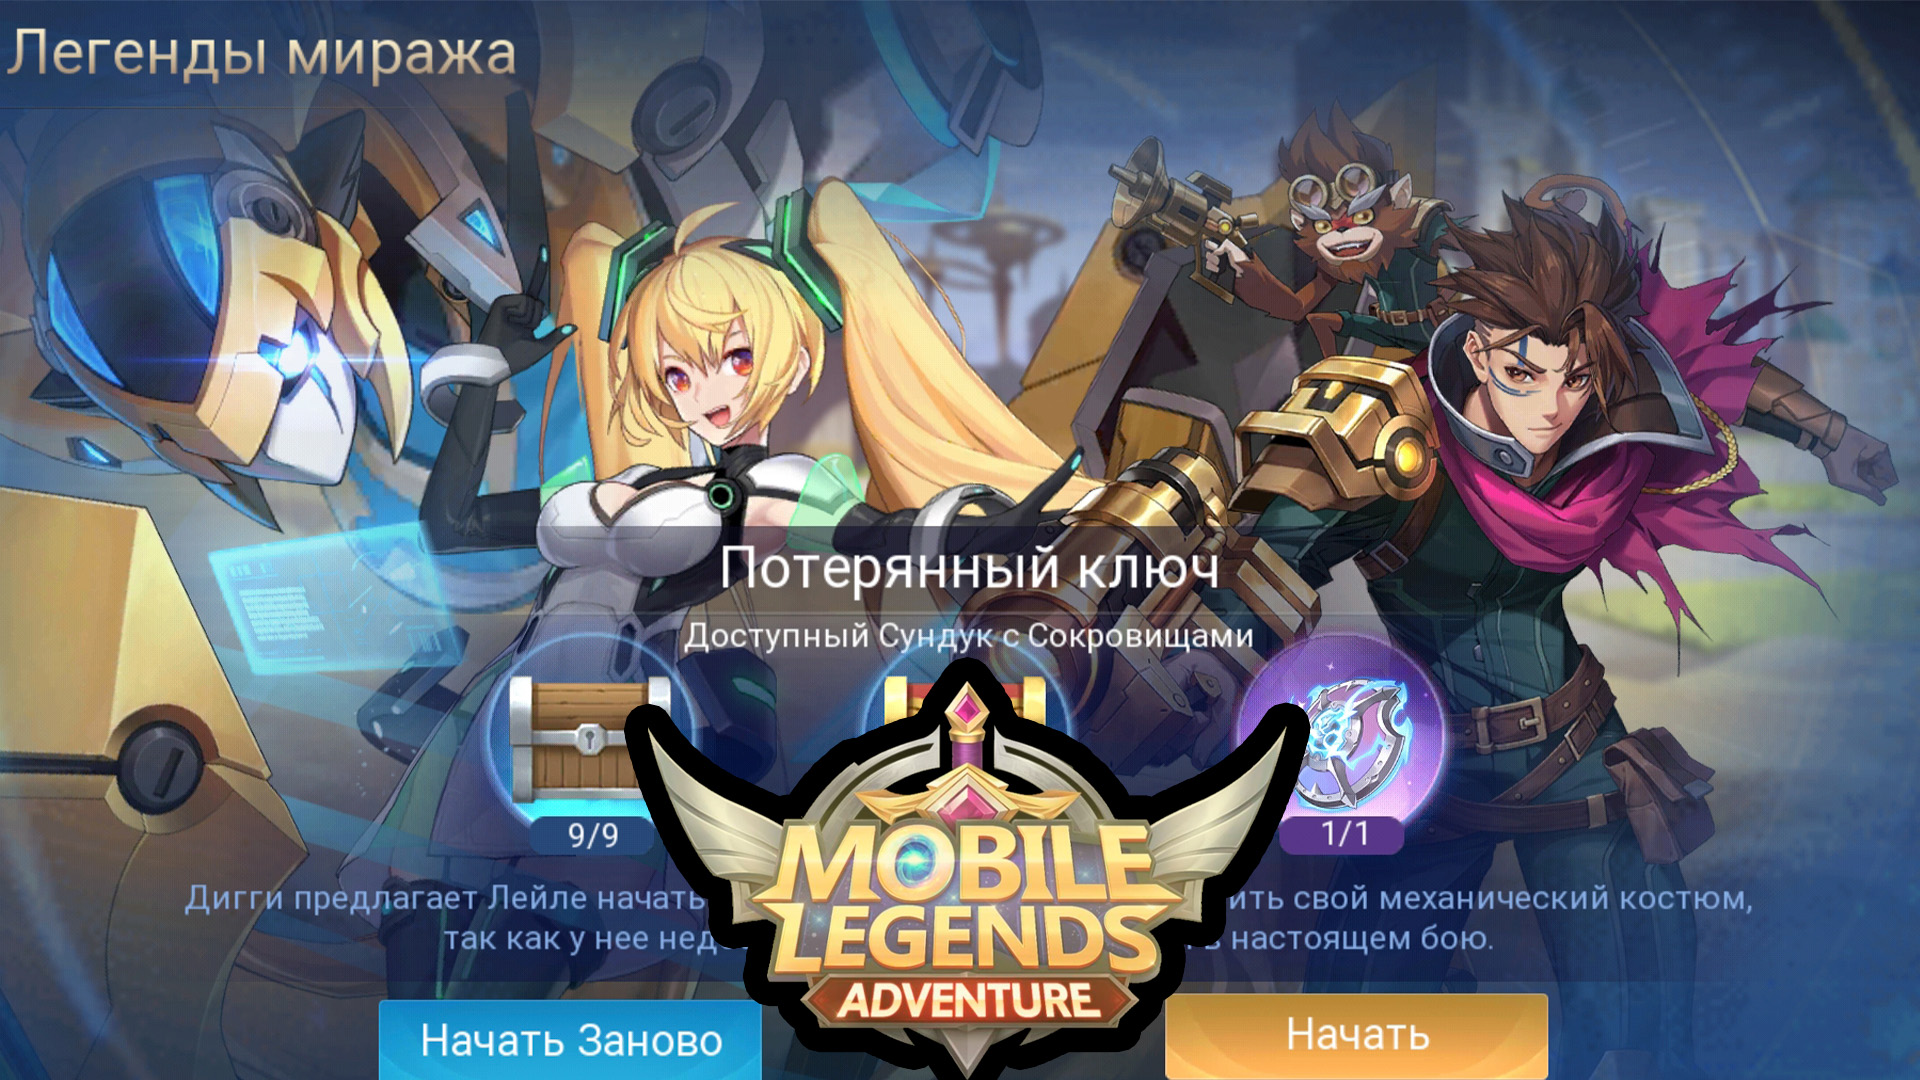 Легенды миража. Руины Акаши Пролог 4. Мобайл легенд. Mobile Legends: Adventure Мираж. Мираж mobile Legends Adventure призывы.